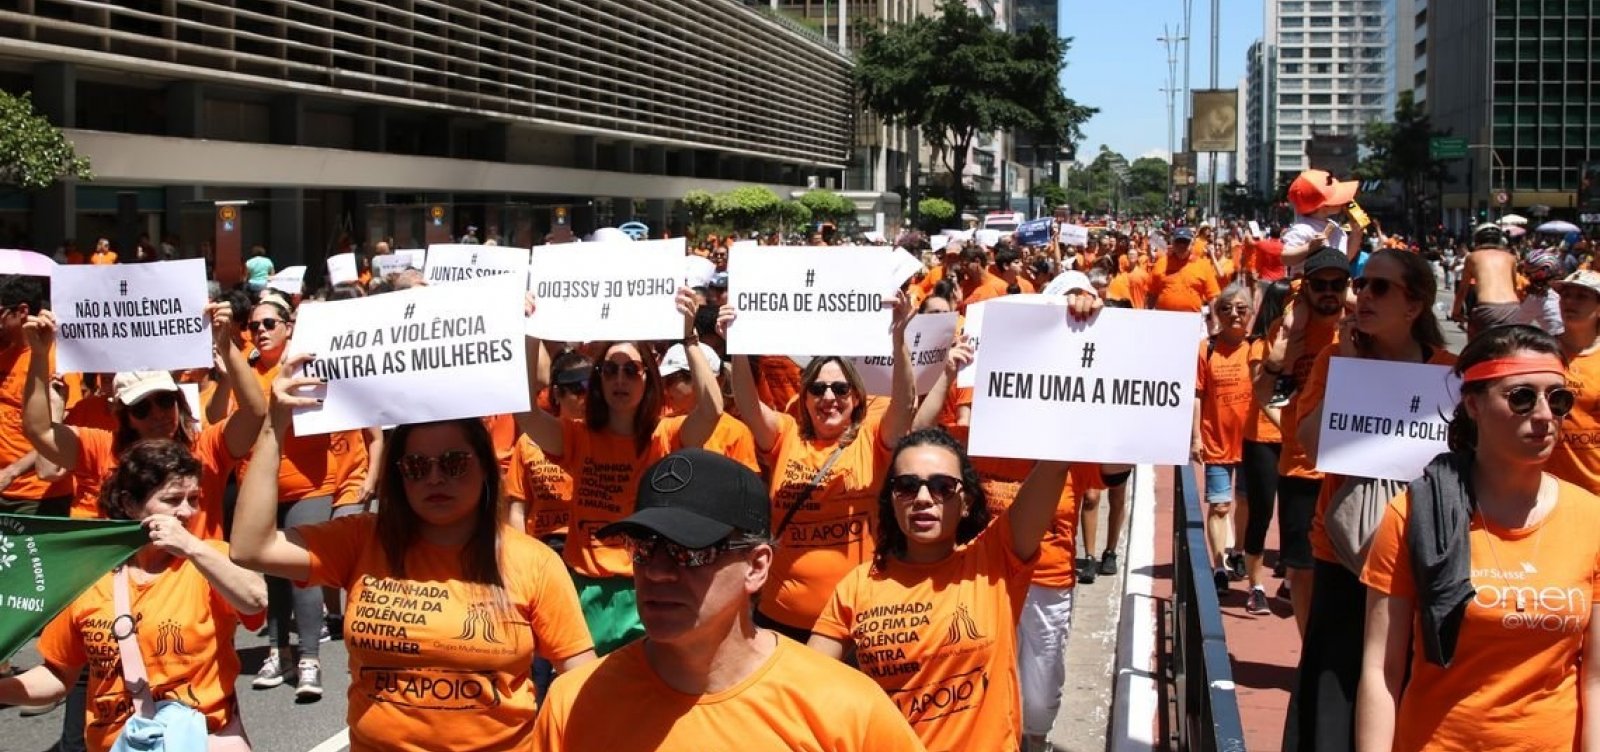 Marcha pelo fim da violência contra mulheres acontece em 26 cidades brasileiras